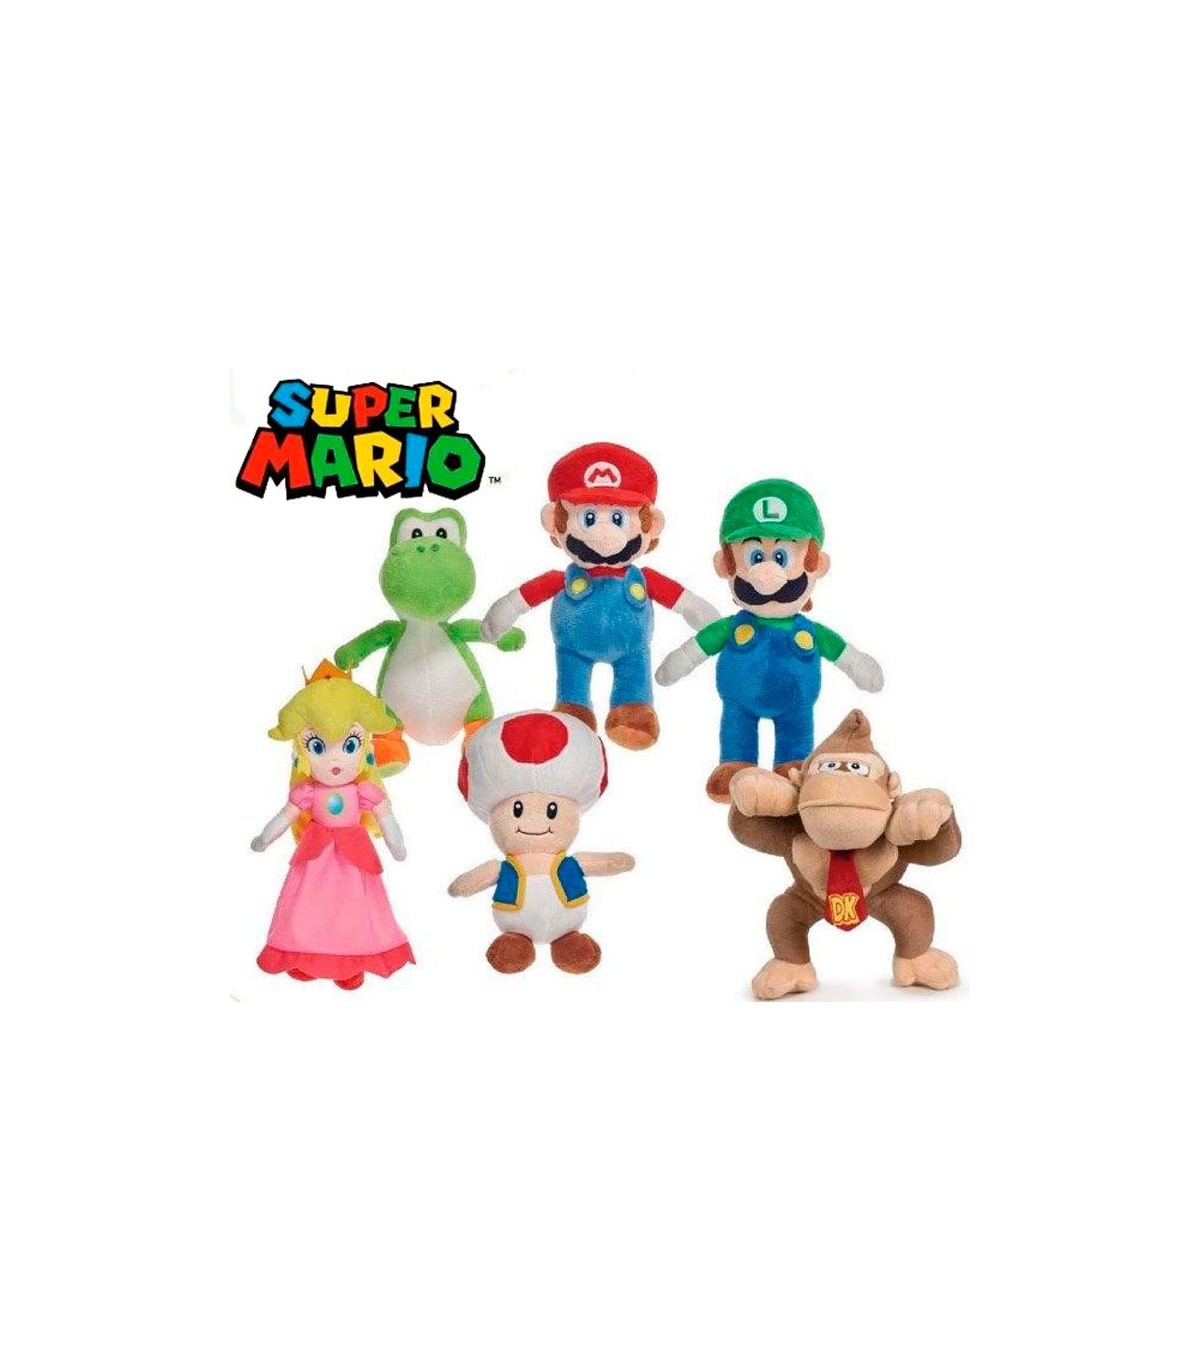 Peluches de Mario Bros y todos los personajes 🚚 Envío gratis 24h!